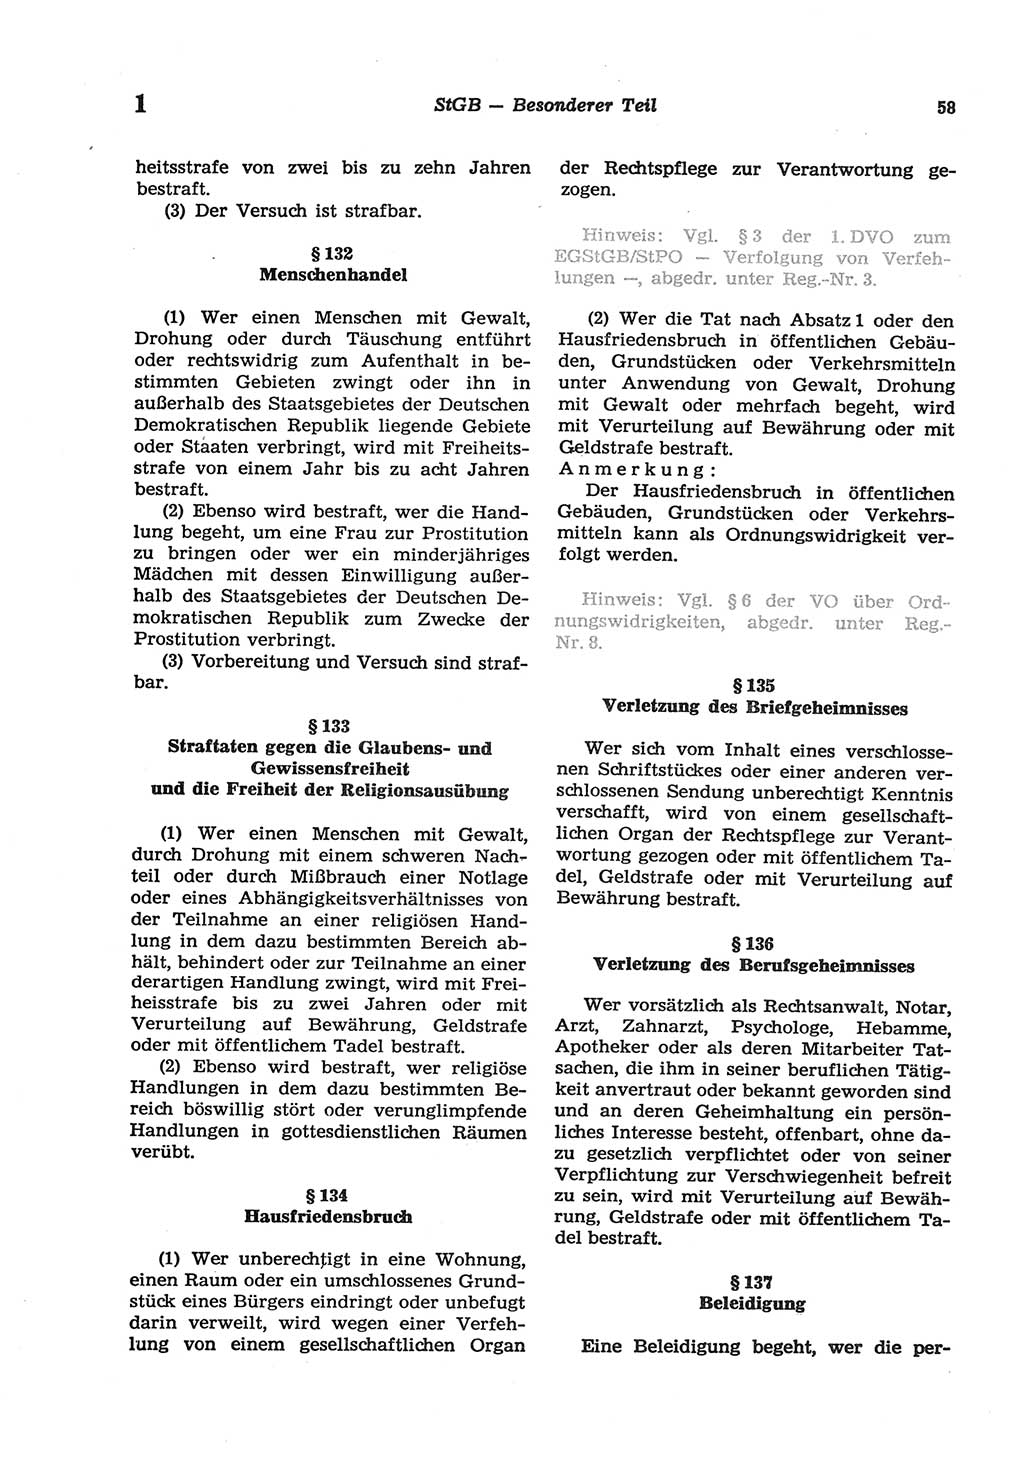 Strafgesetzbuch (StGB) der Deutschen Demokratischen Republik (DDR) und angrenzende Gesetze und Bestimmungen 1977, Seite 58 (StGB DDR Ges. Best. 1977, S. 58)